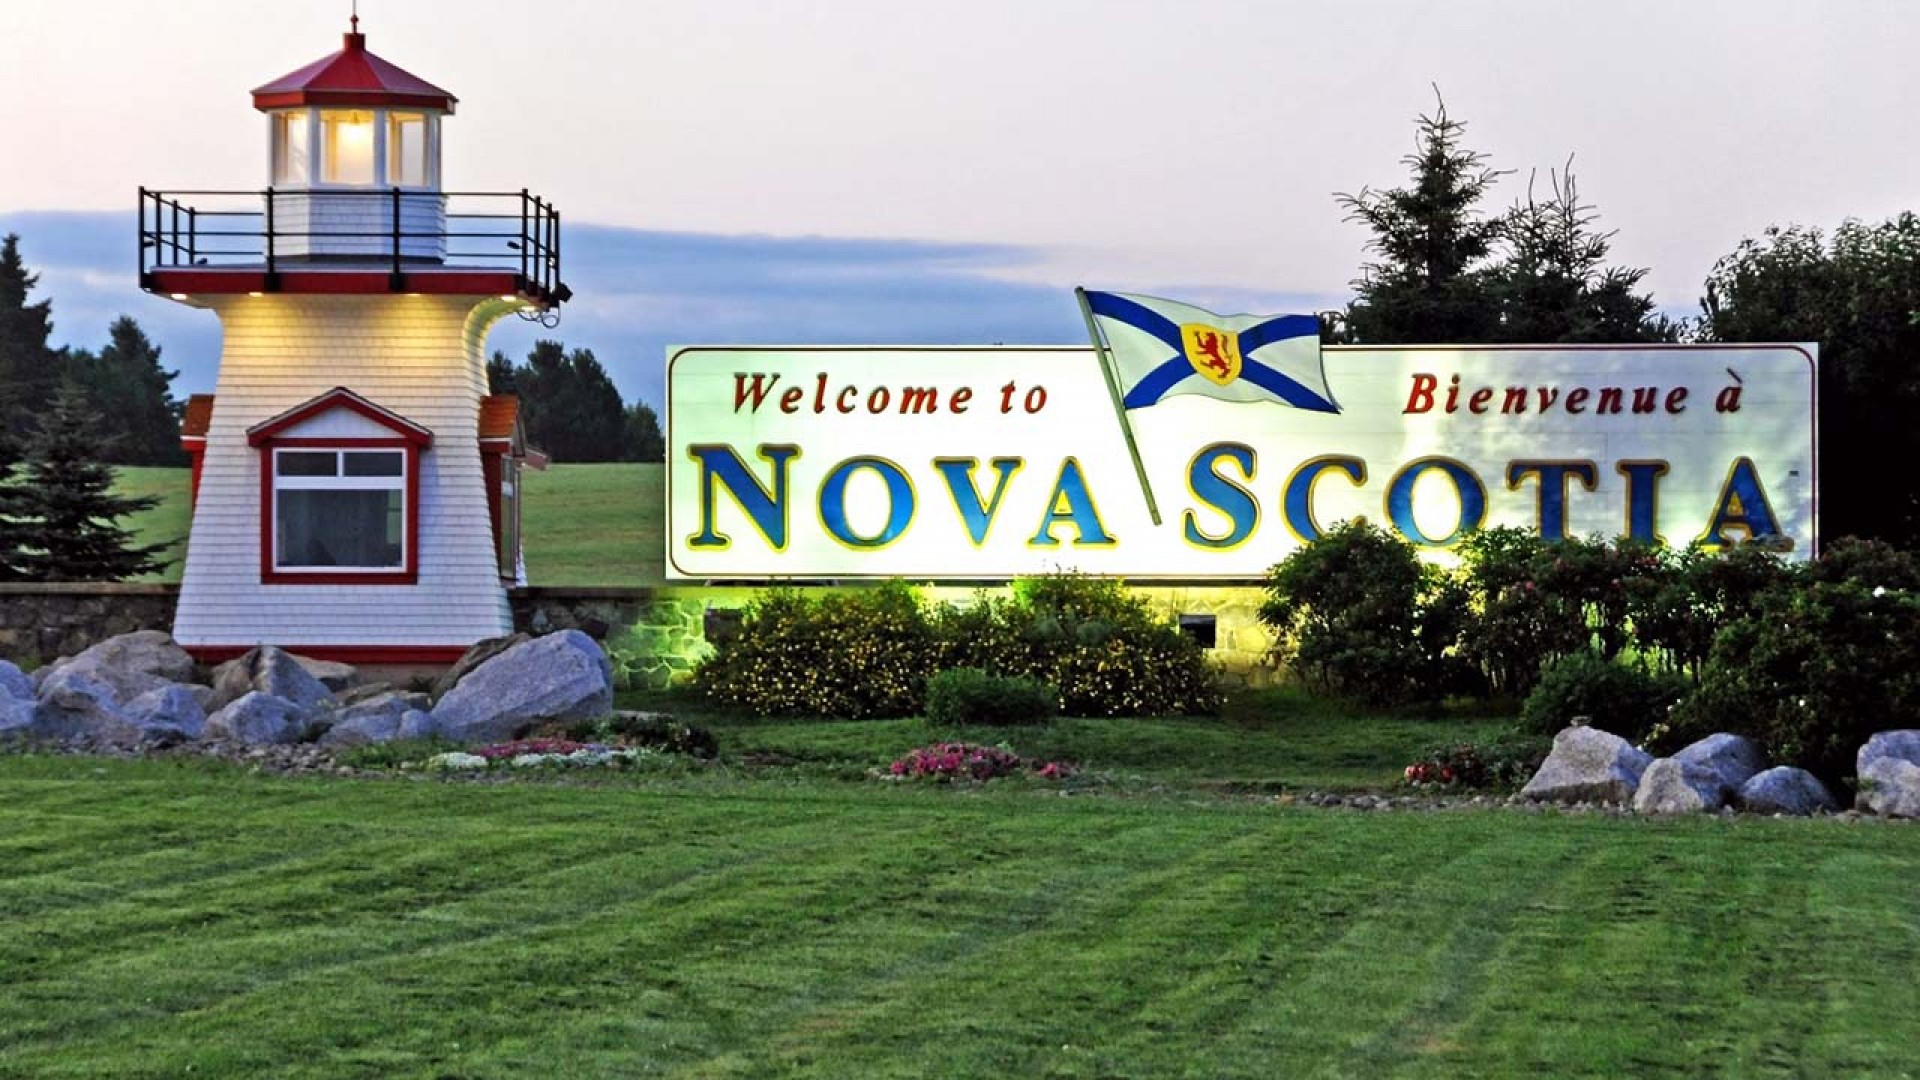 Nova Scotia – Điểm đến lý tưởng khi du học tại Canada